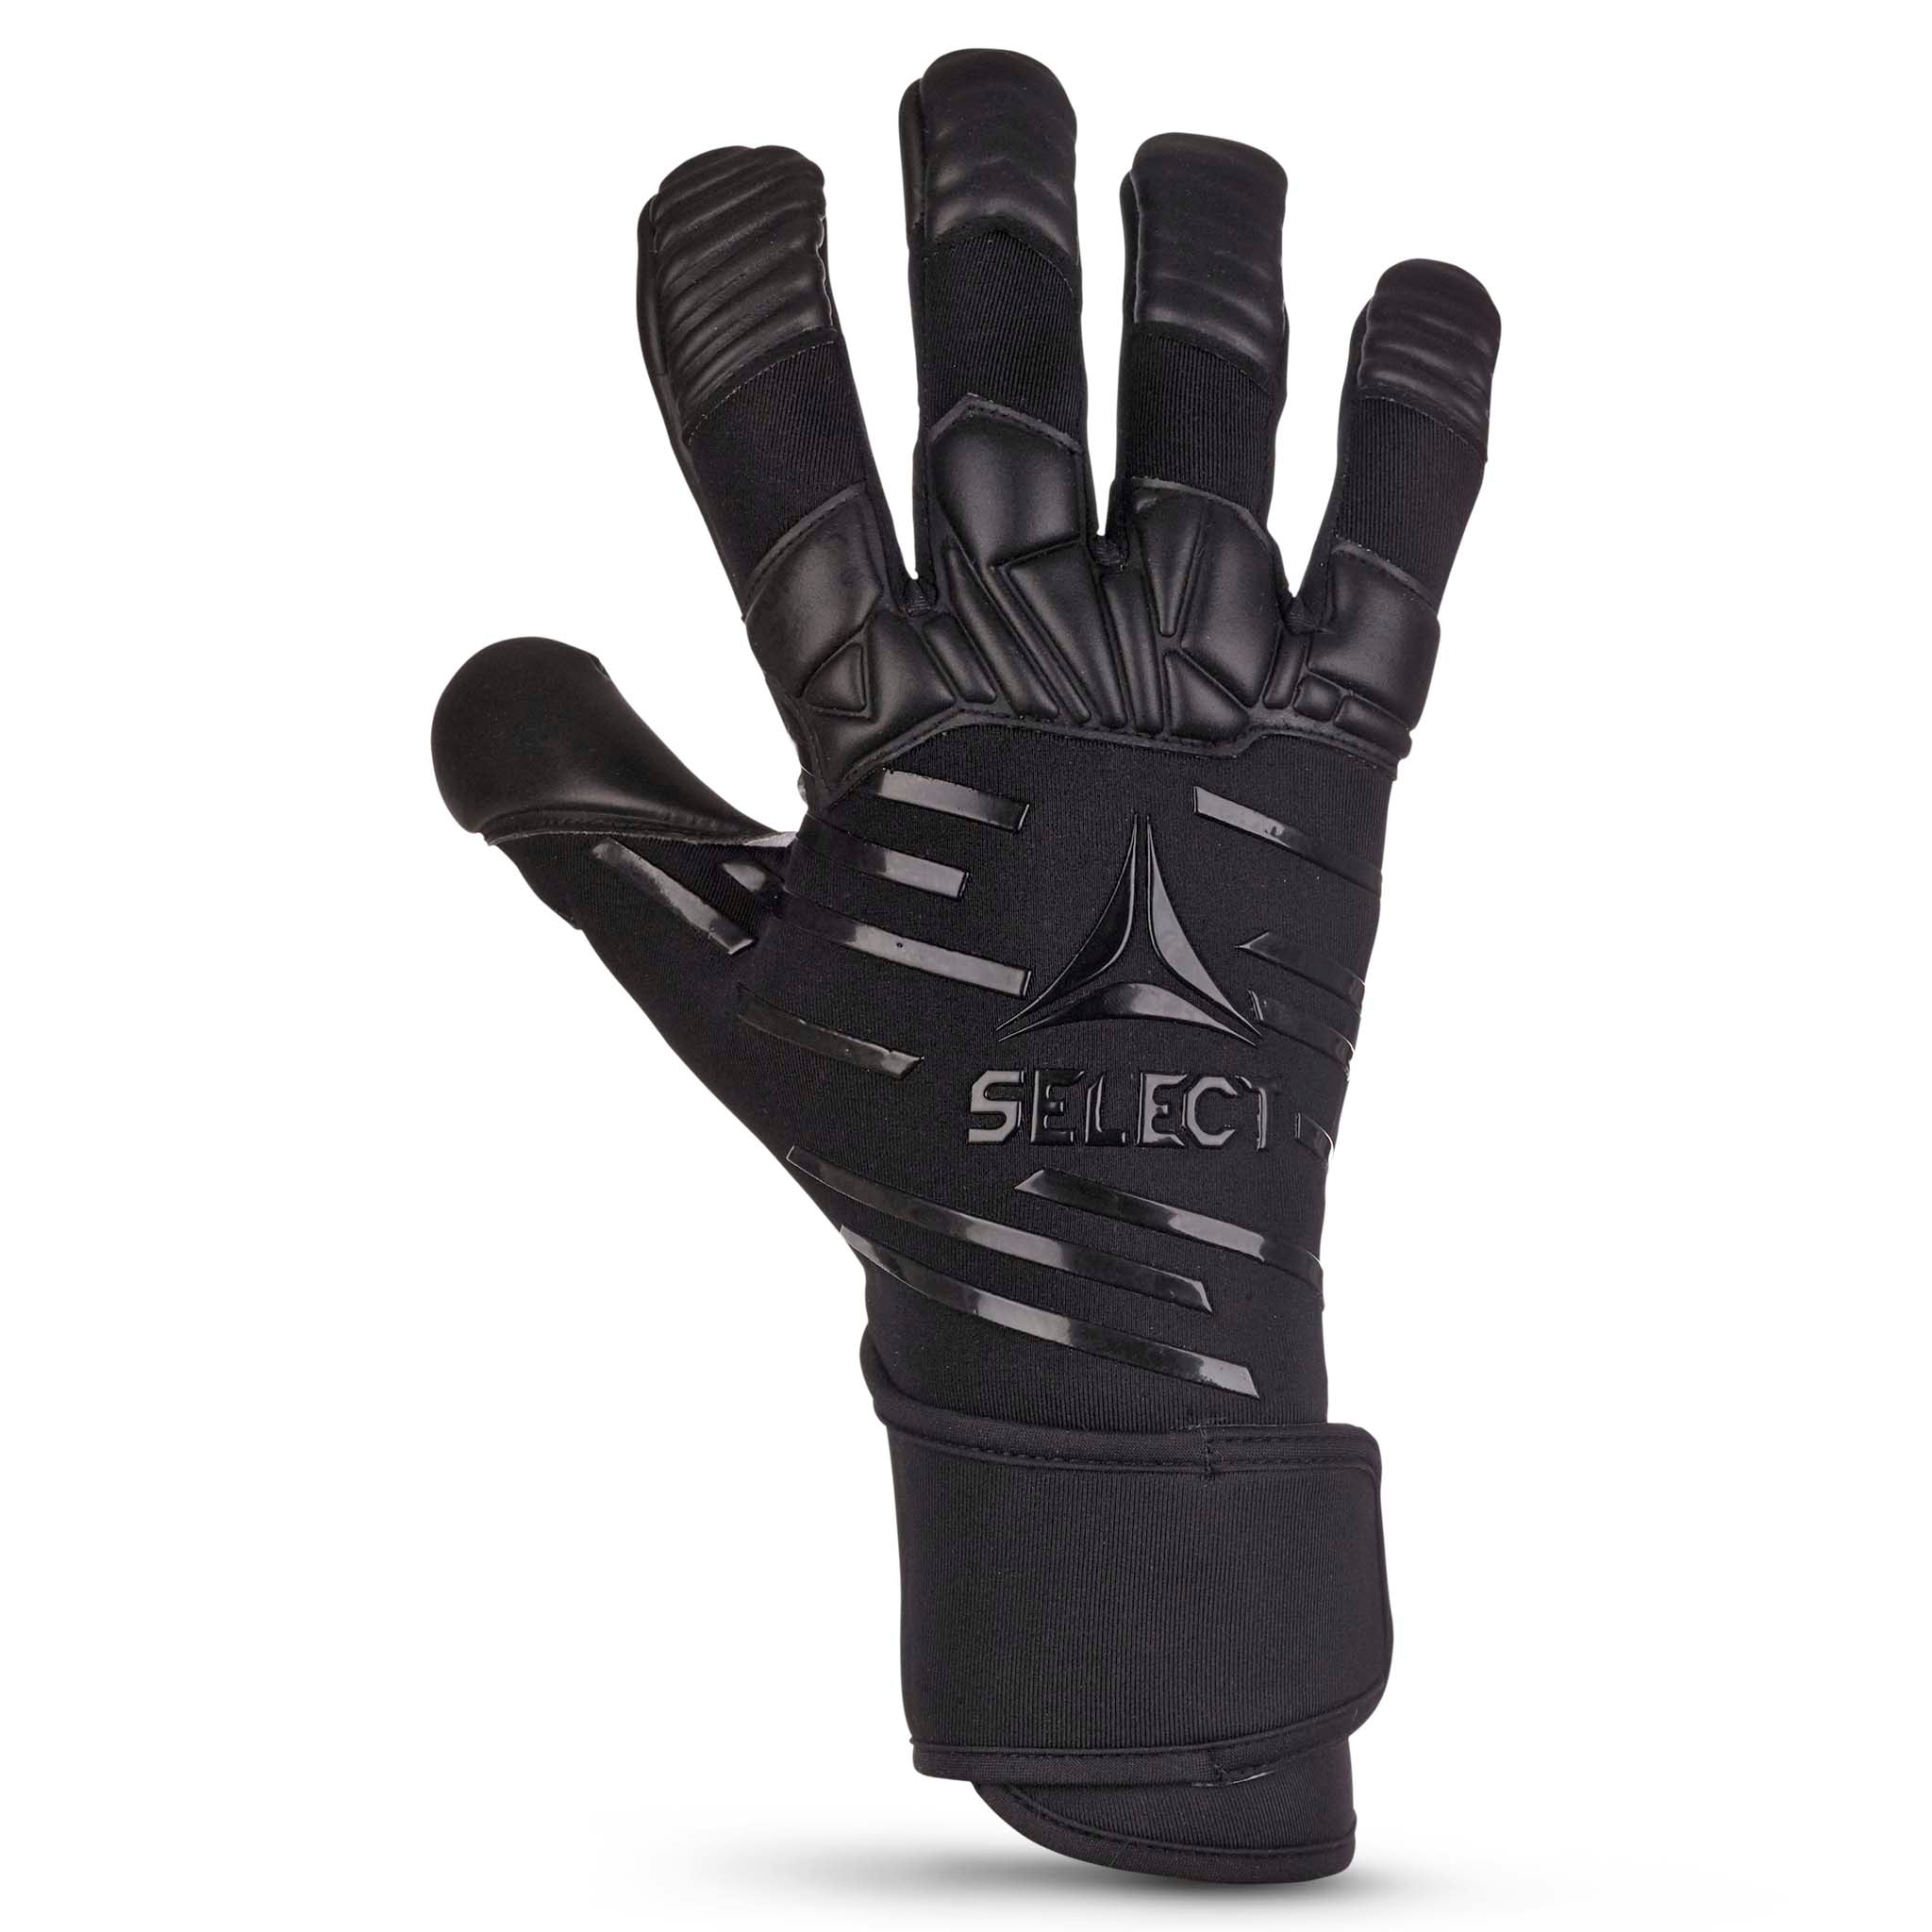 Målvaktshandskar - 90 Flexi Pro #färg_svart/svart